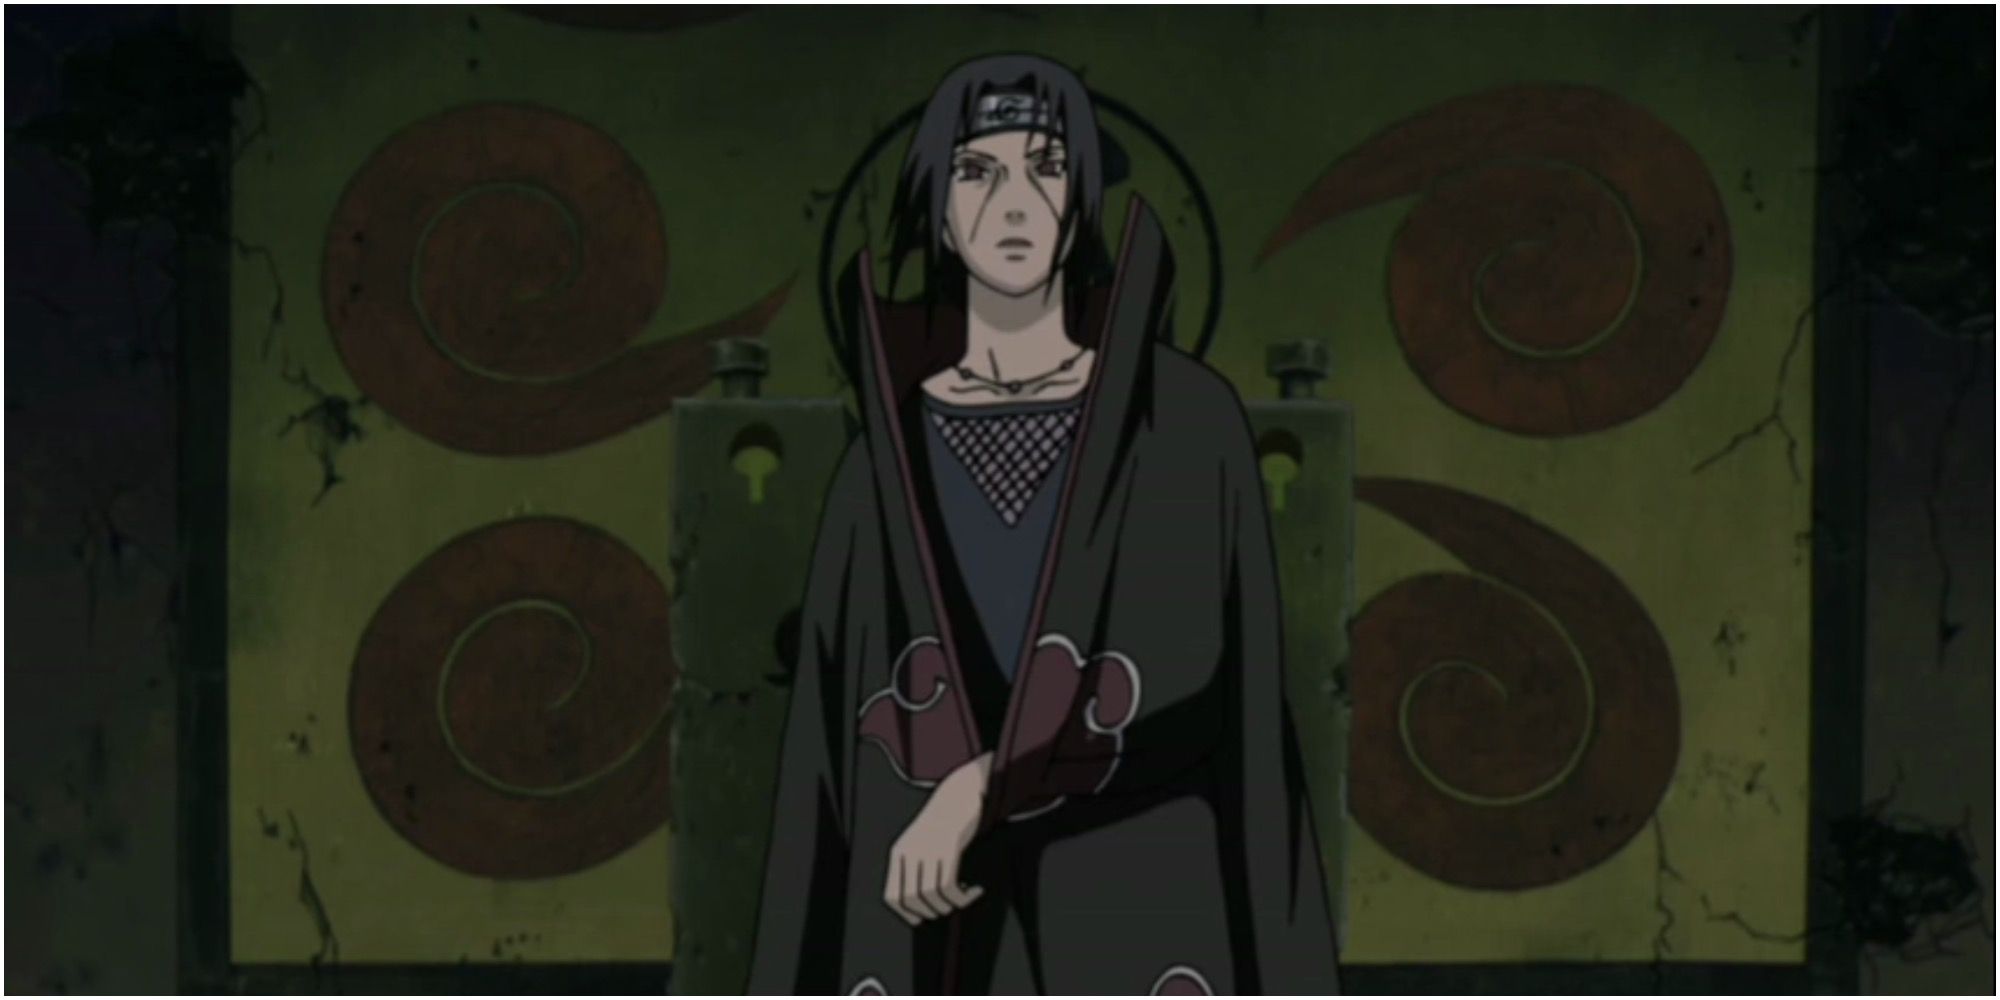 Itachi Uchiha from Naruto in his Akatsuki cape